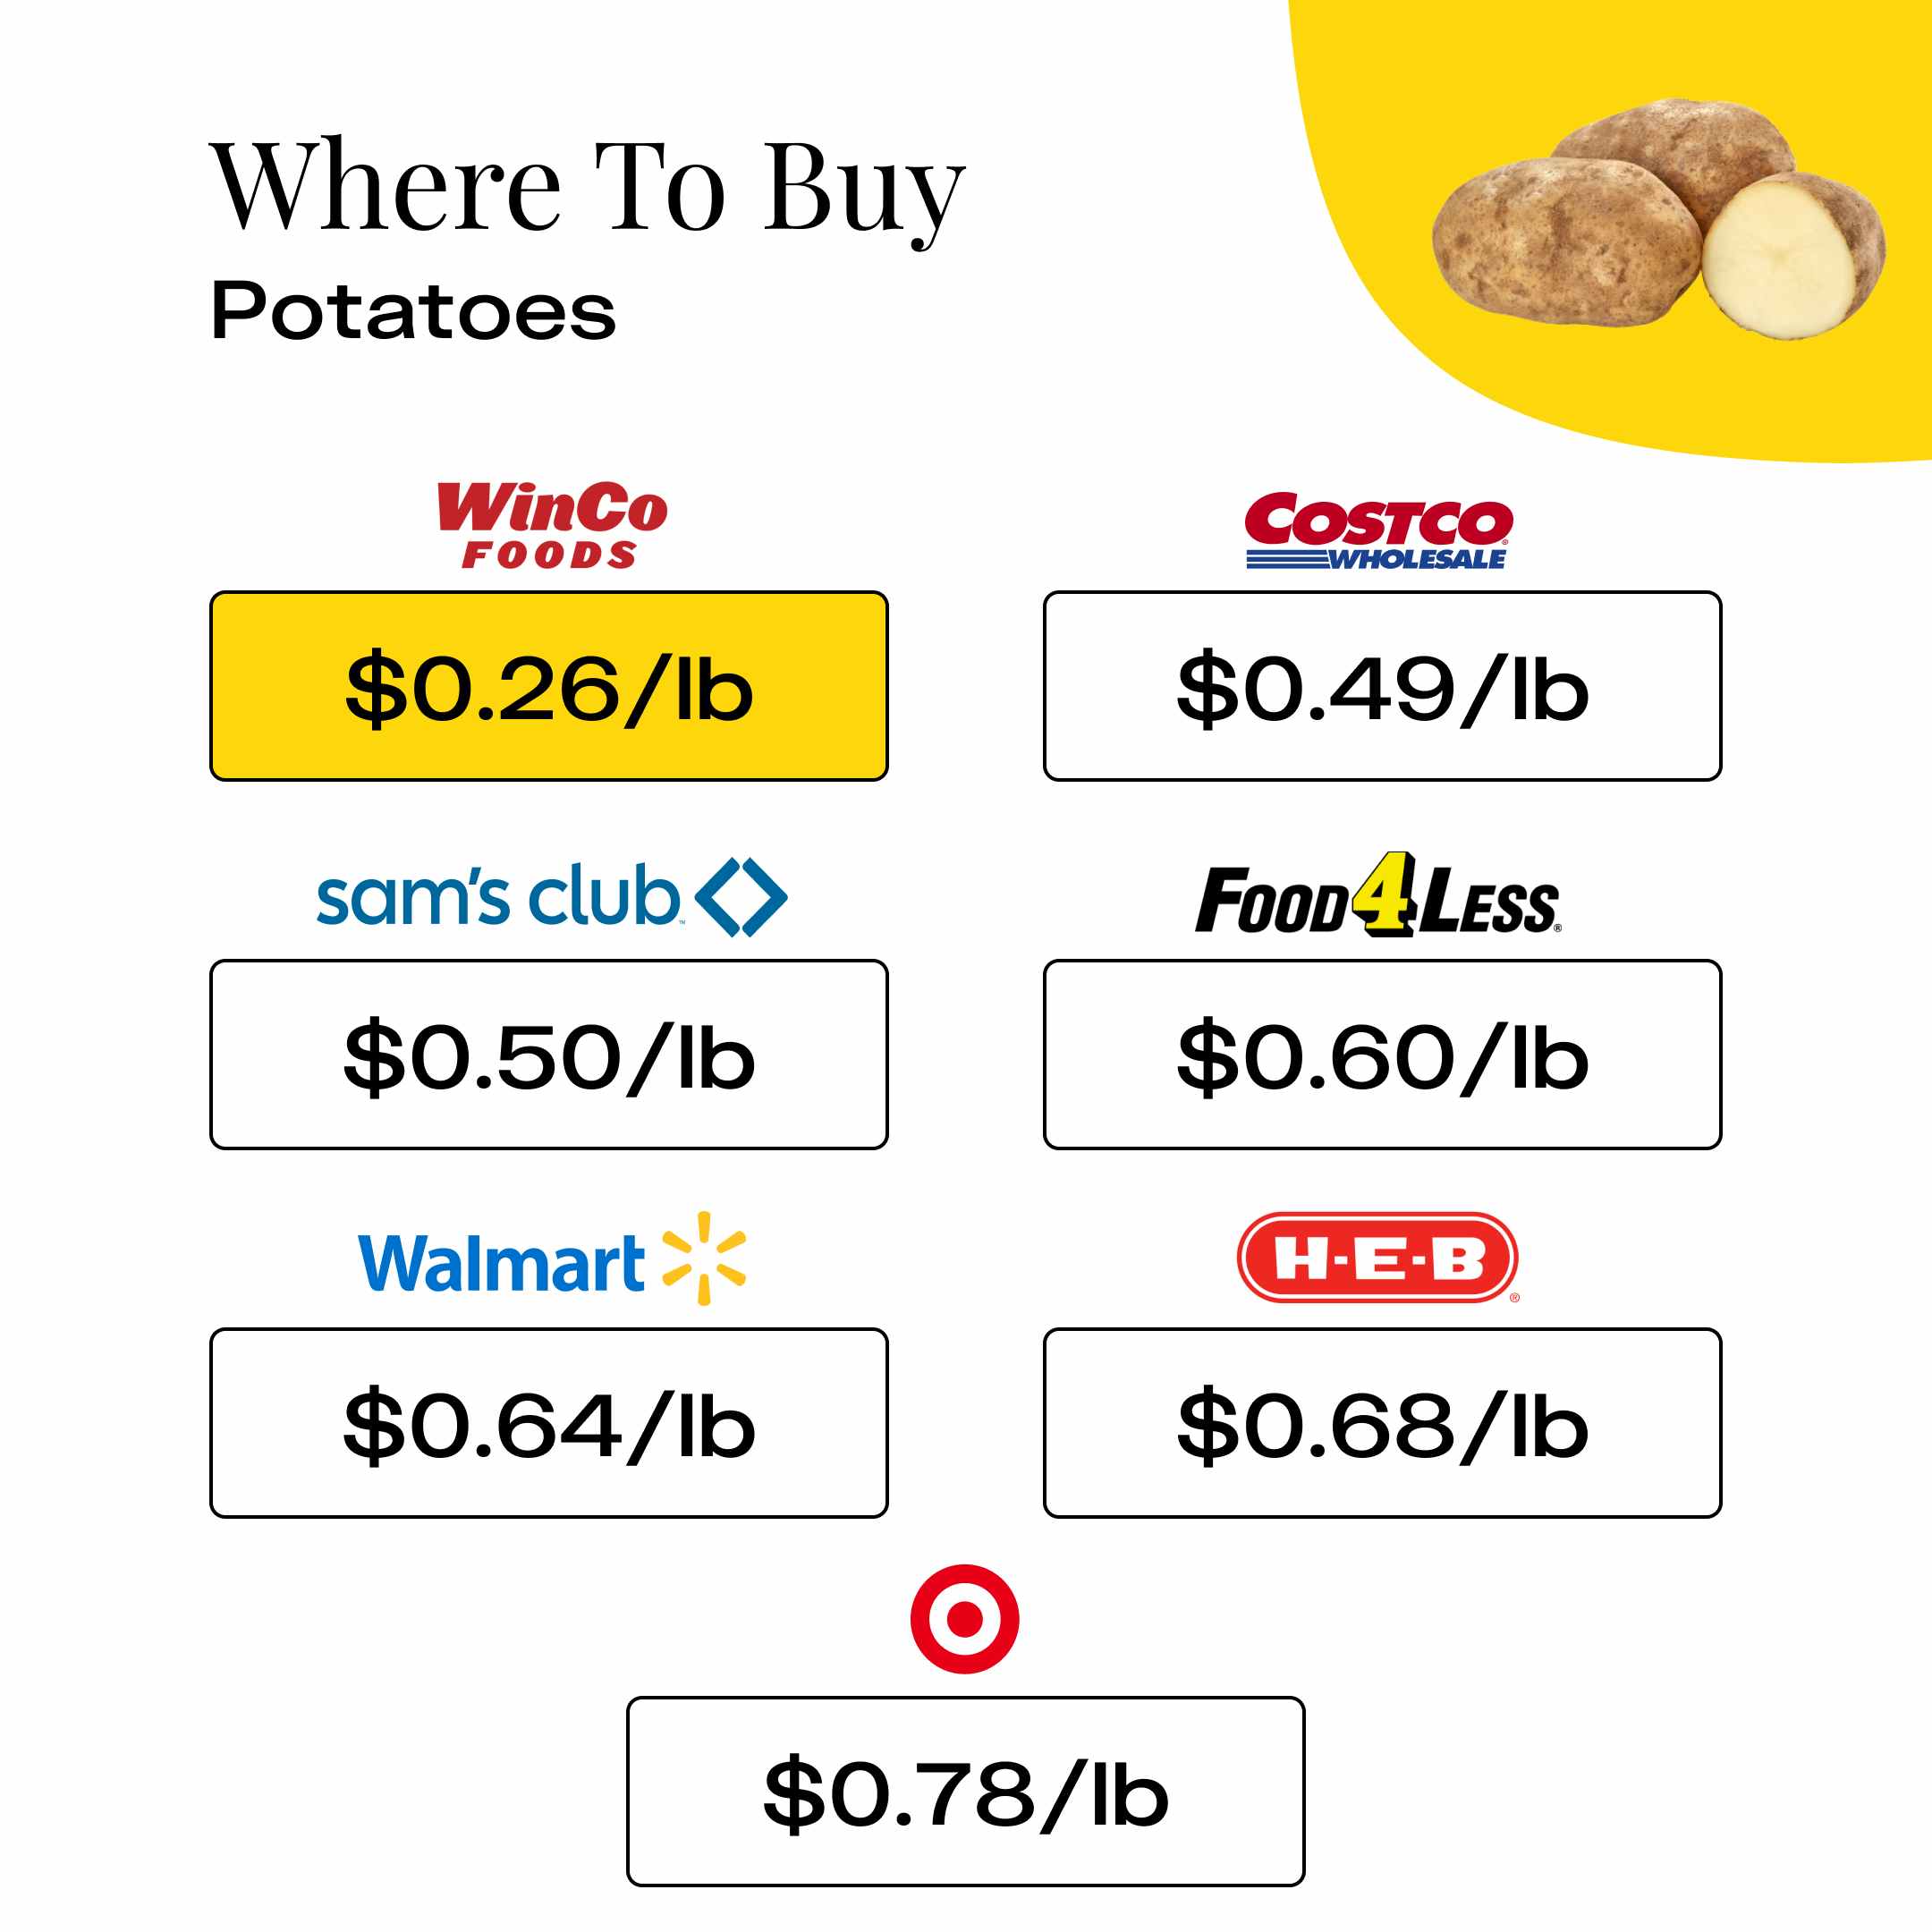 Where To Buy Potatoes